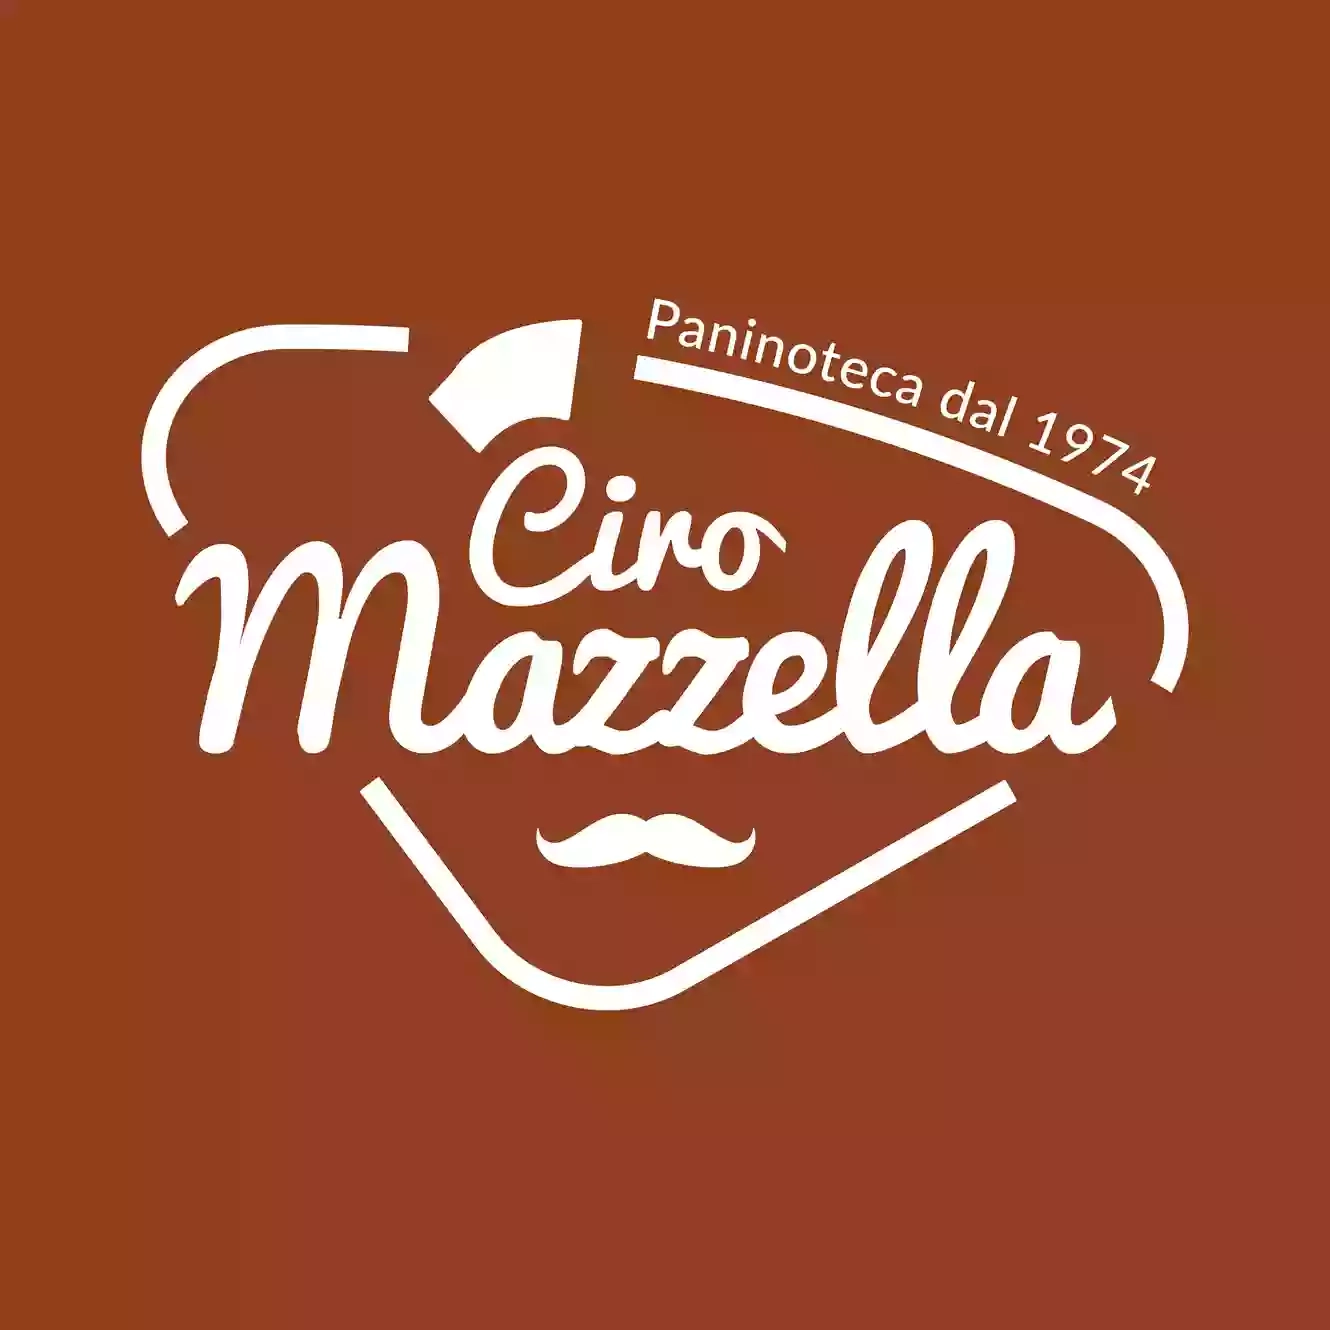 Ciro Mazzella Paninoteca dal 1974